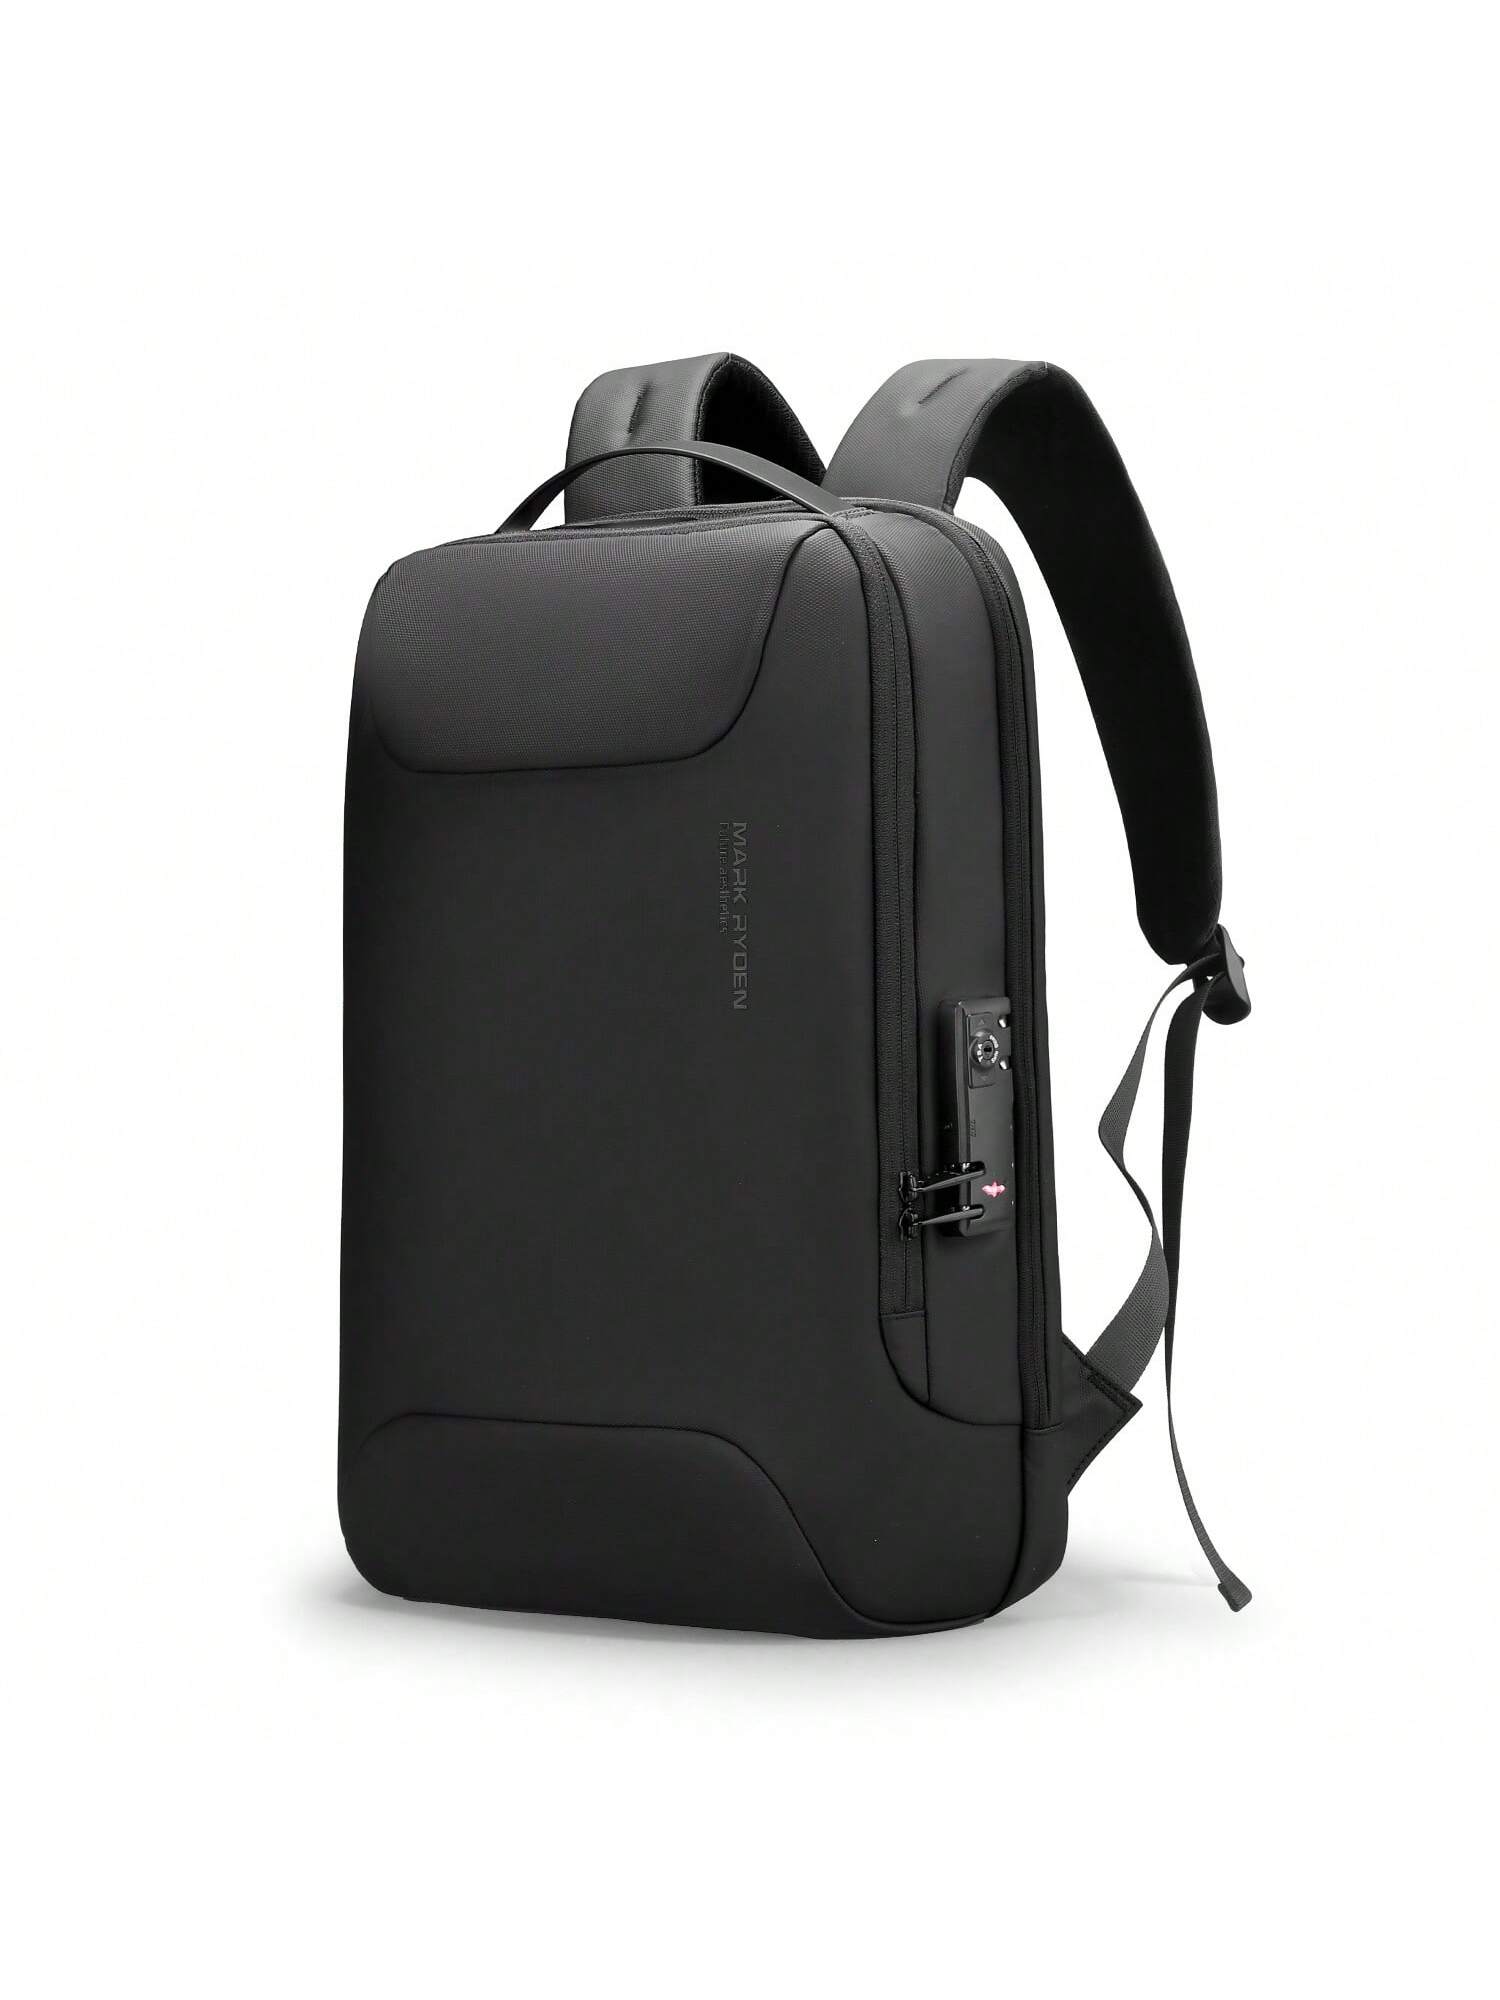 Мужской рюкзак Mark Ryden Anti Thief, черный мужской рюкзак деловая дорожная сумка usb 15 6 дюйма сумка для компьютера